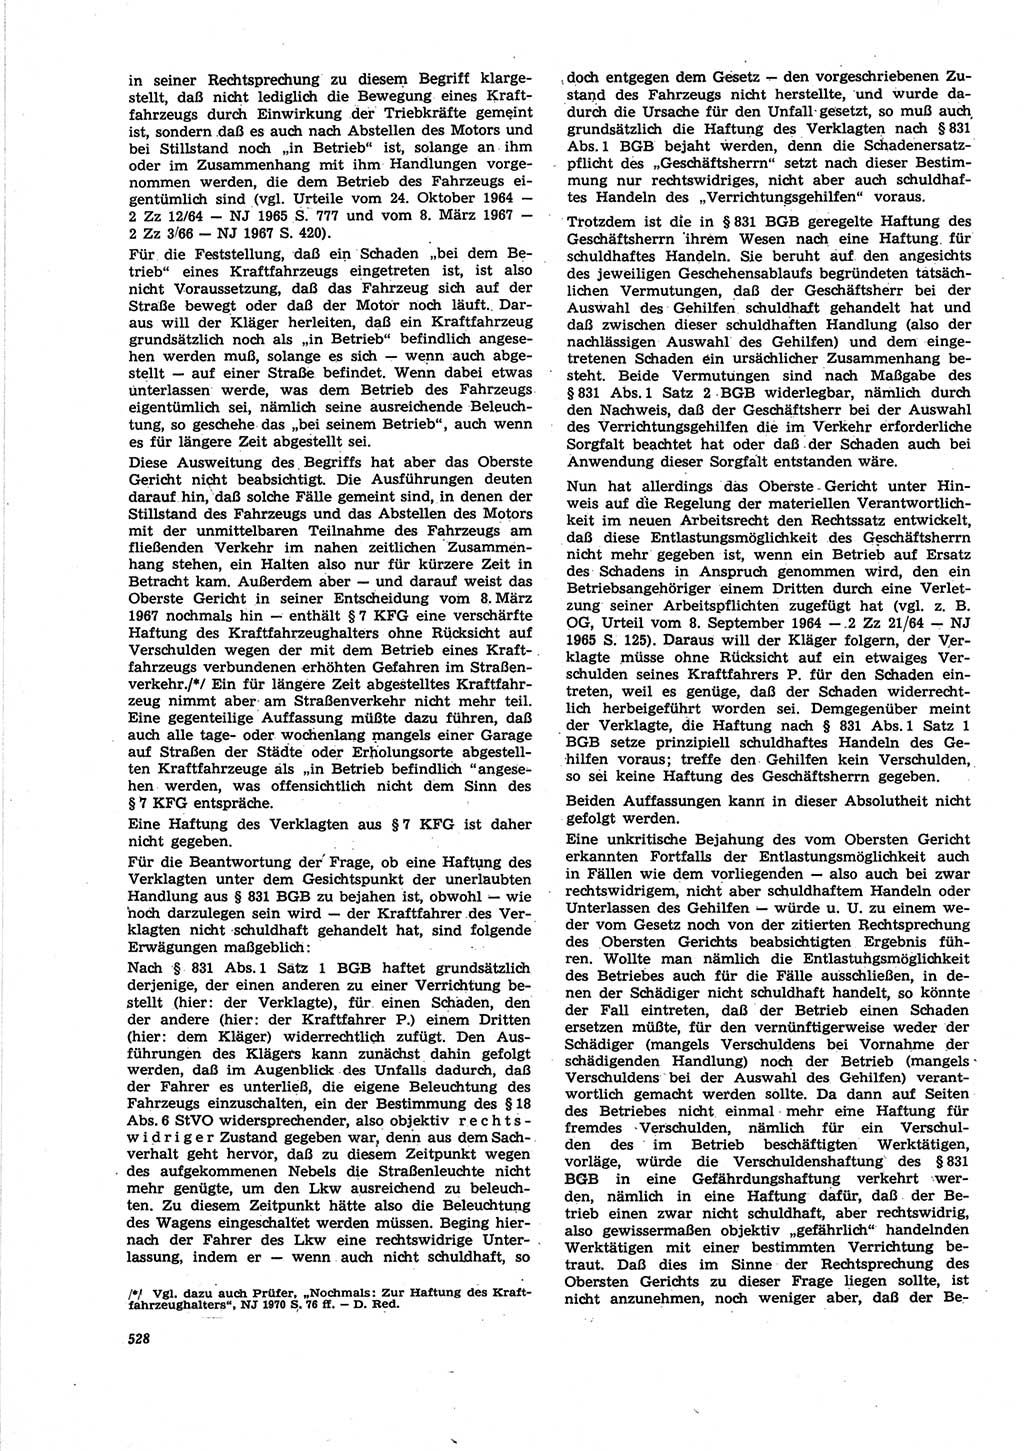 Neue Justiz (NJ), Zeitschrift für Recht und Rechtswissenschaft [Deutsche Demokratische Republik (DDR)], 25. Jahrgang 1971, Seite 528 (NJ DDR 1971, S. 528)